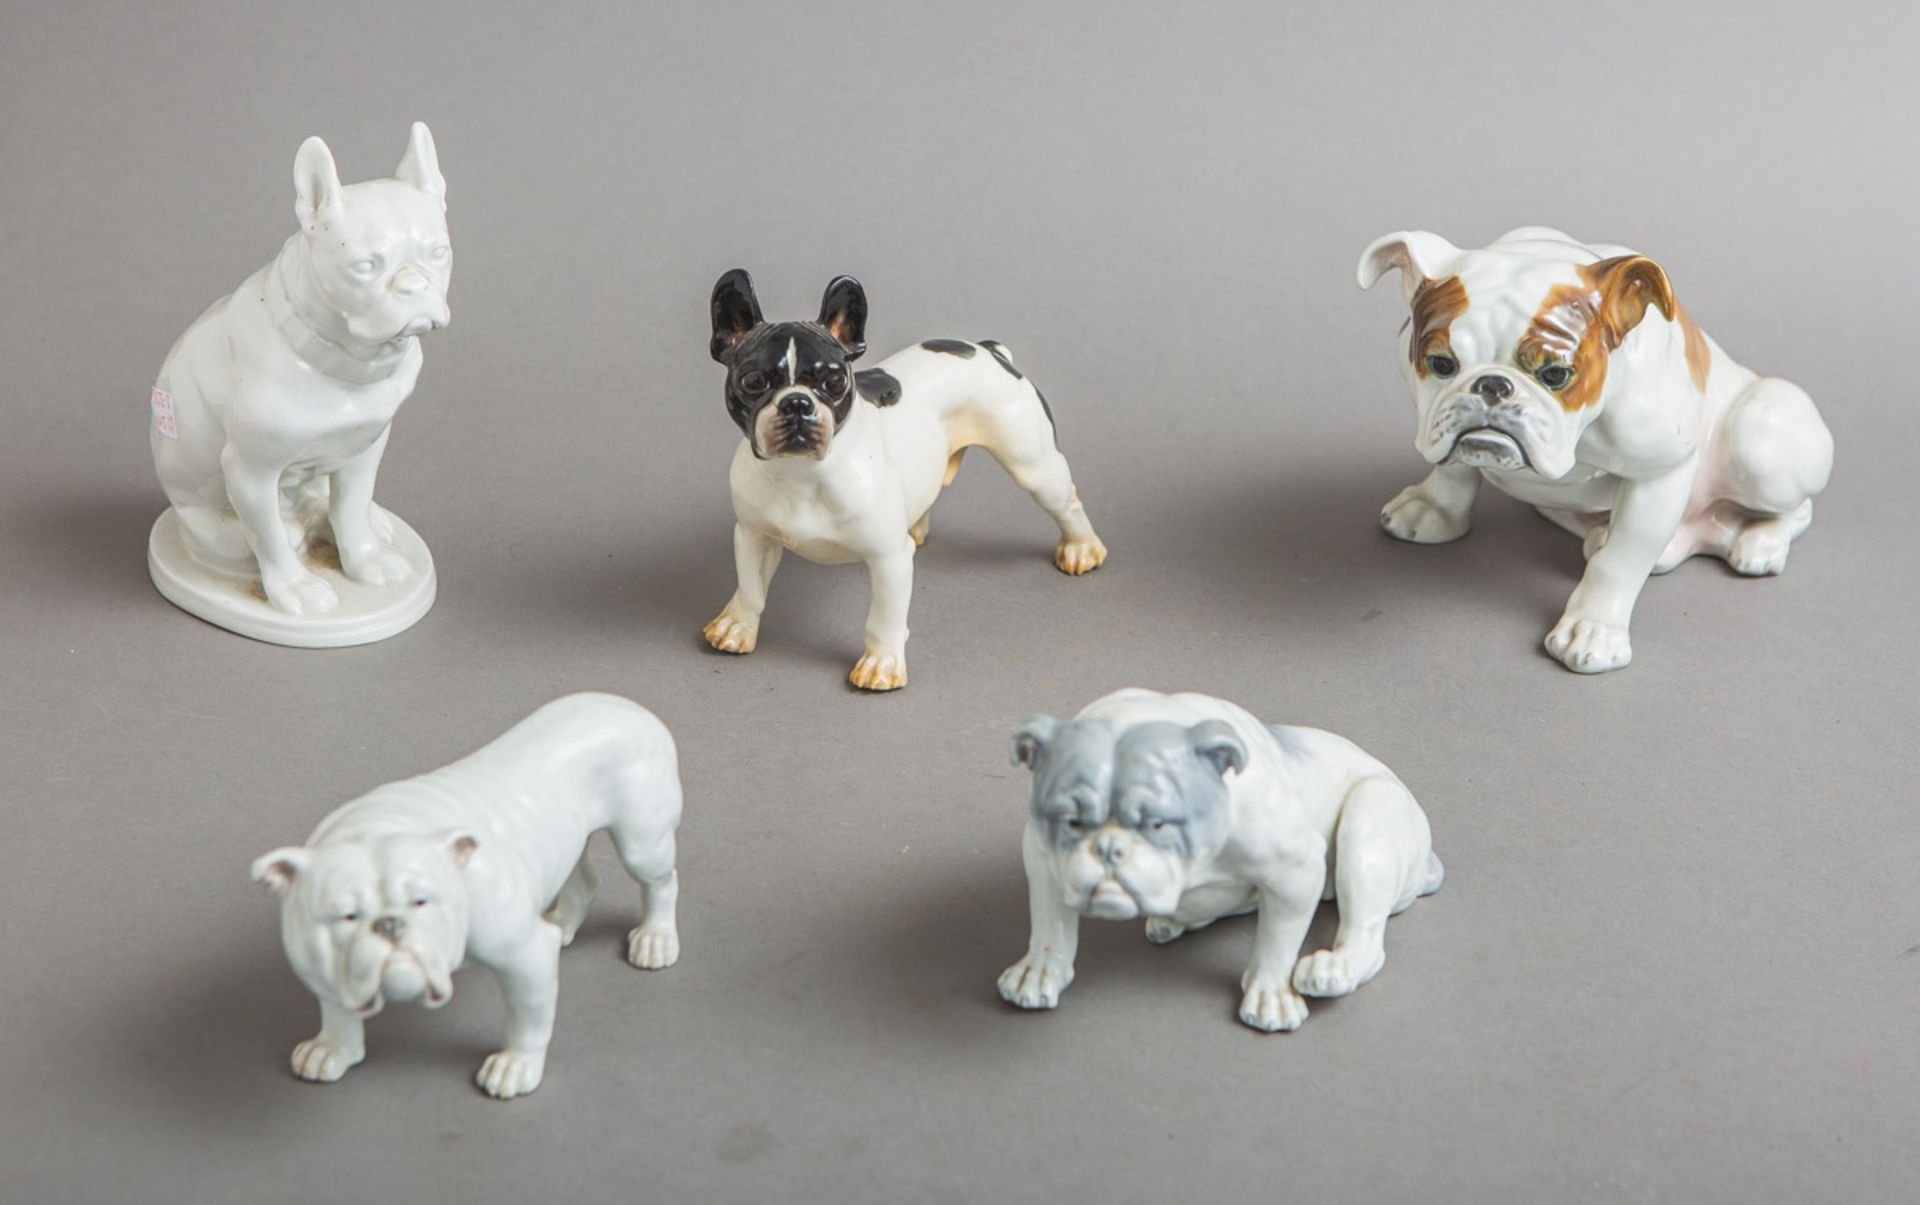 5-teiliges Konvolut von Porzellanfiguren, Englische und Französche Bulldoggen